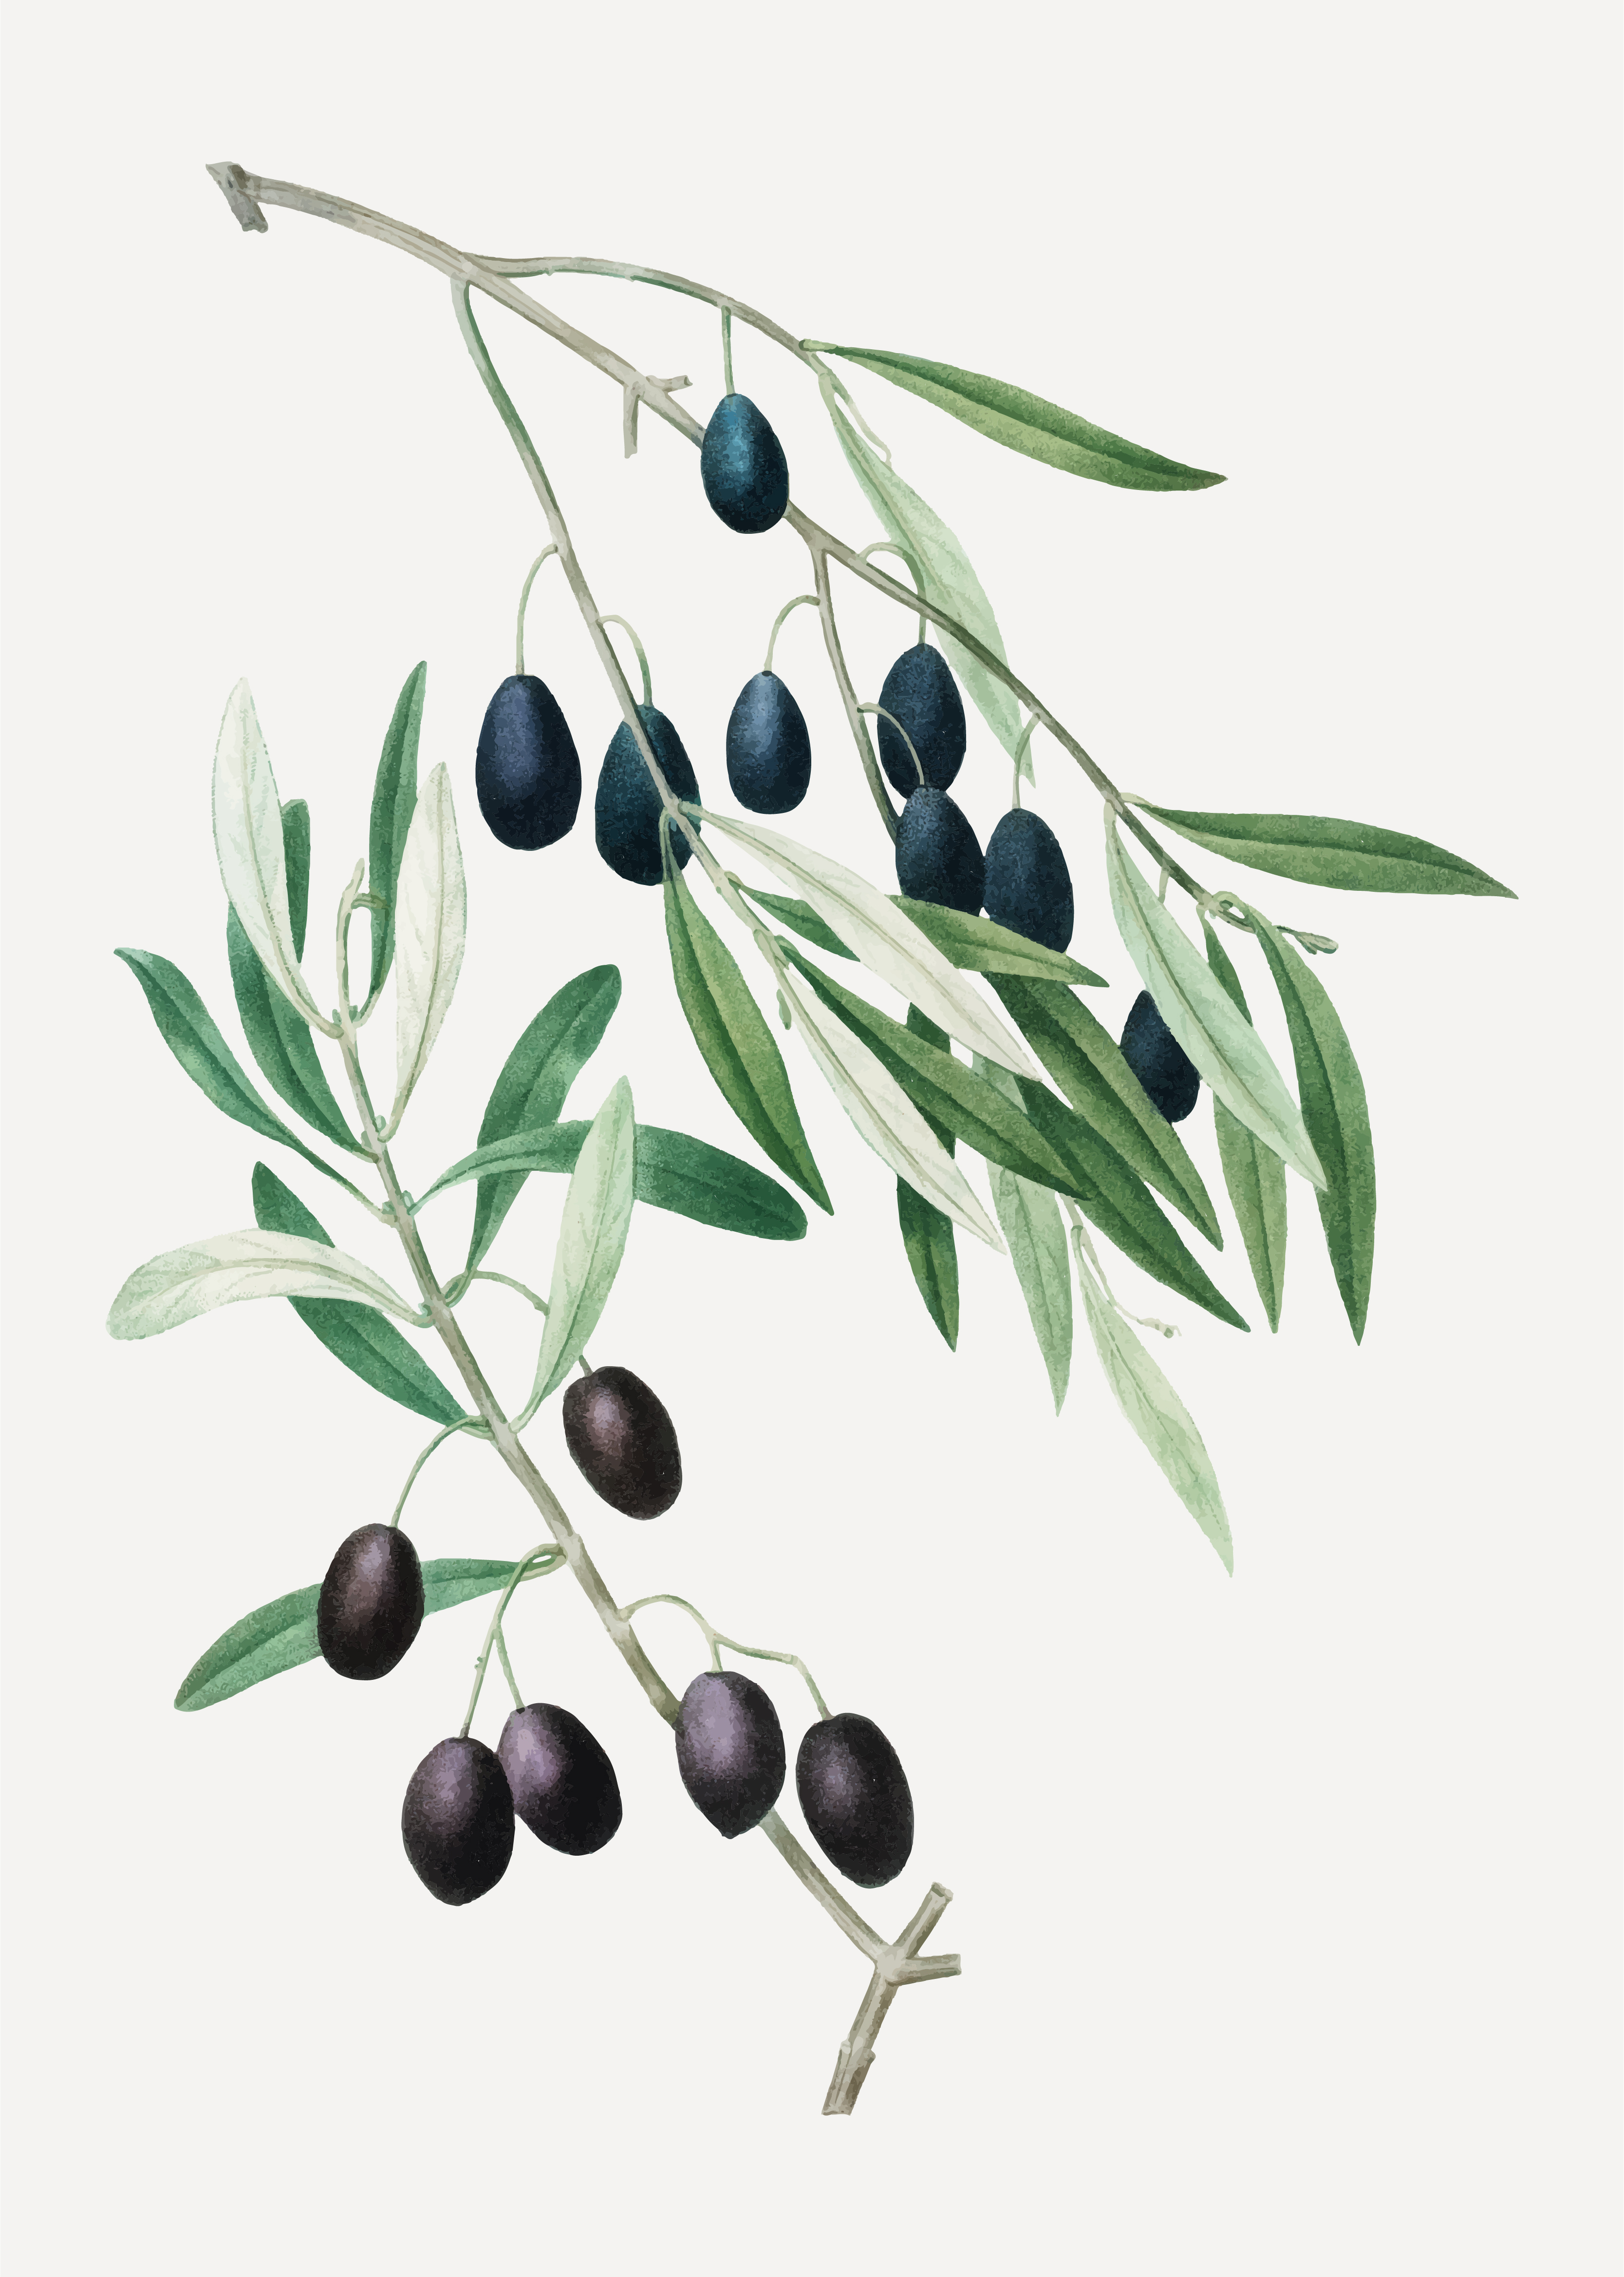 Оливки на ветке